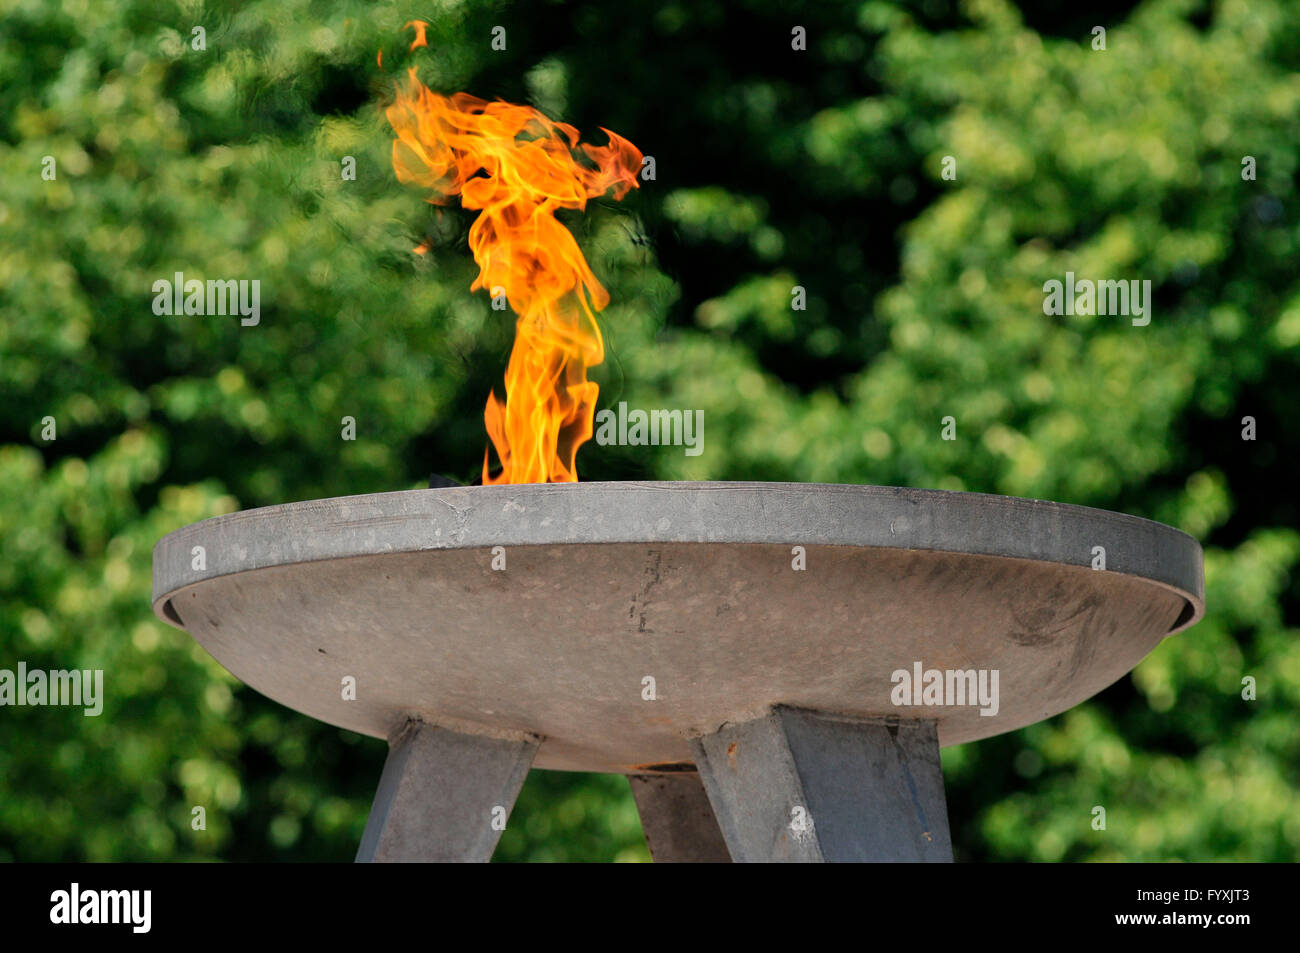 Flamme éternelle, monument à la mémoire des victimes des déplacements forcés, Theodor-Heuss-Platz, Charlottenburg, Berlin, Allemagne Banque D'Images